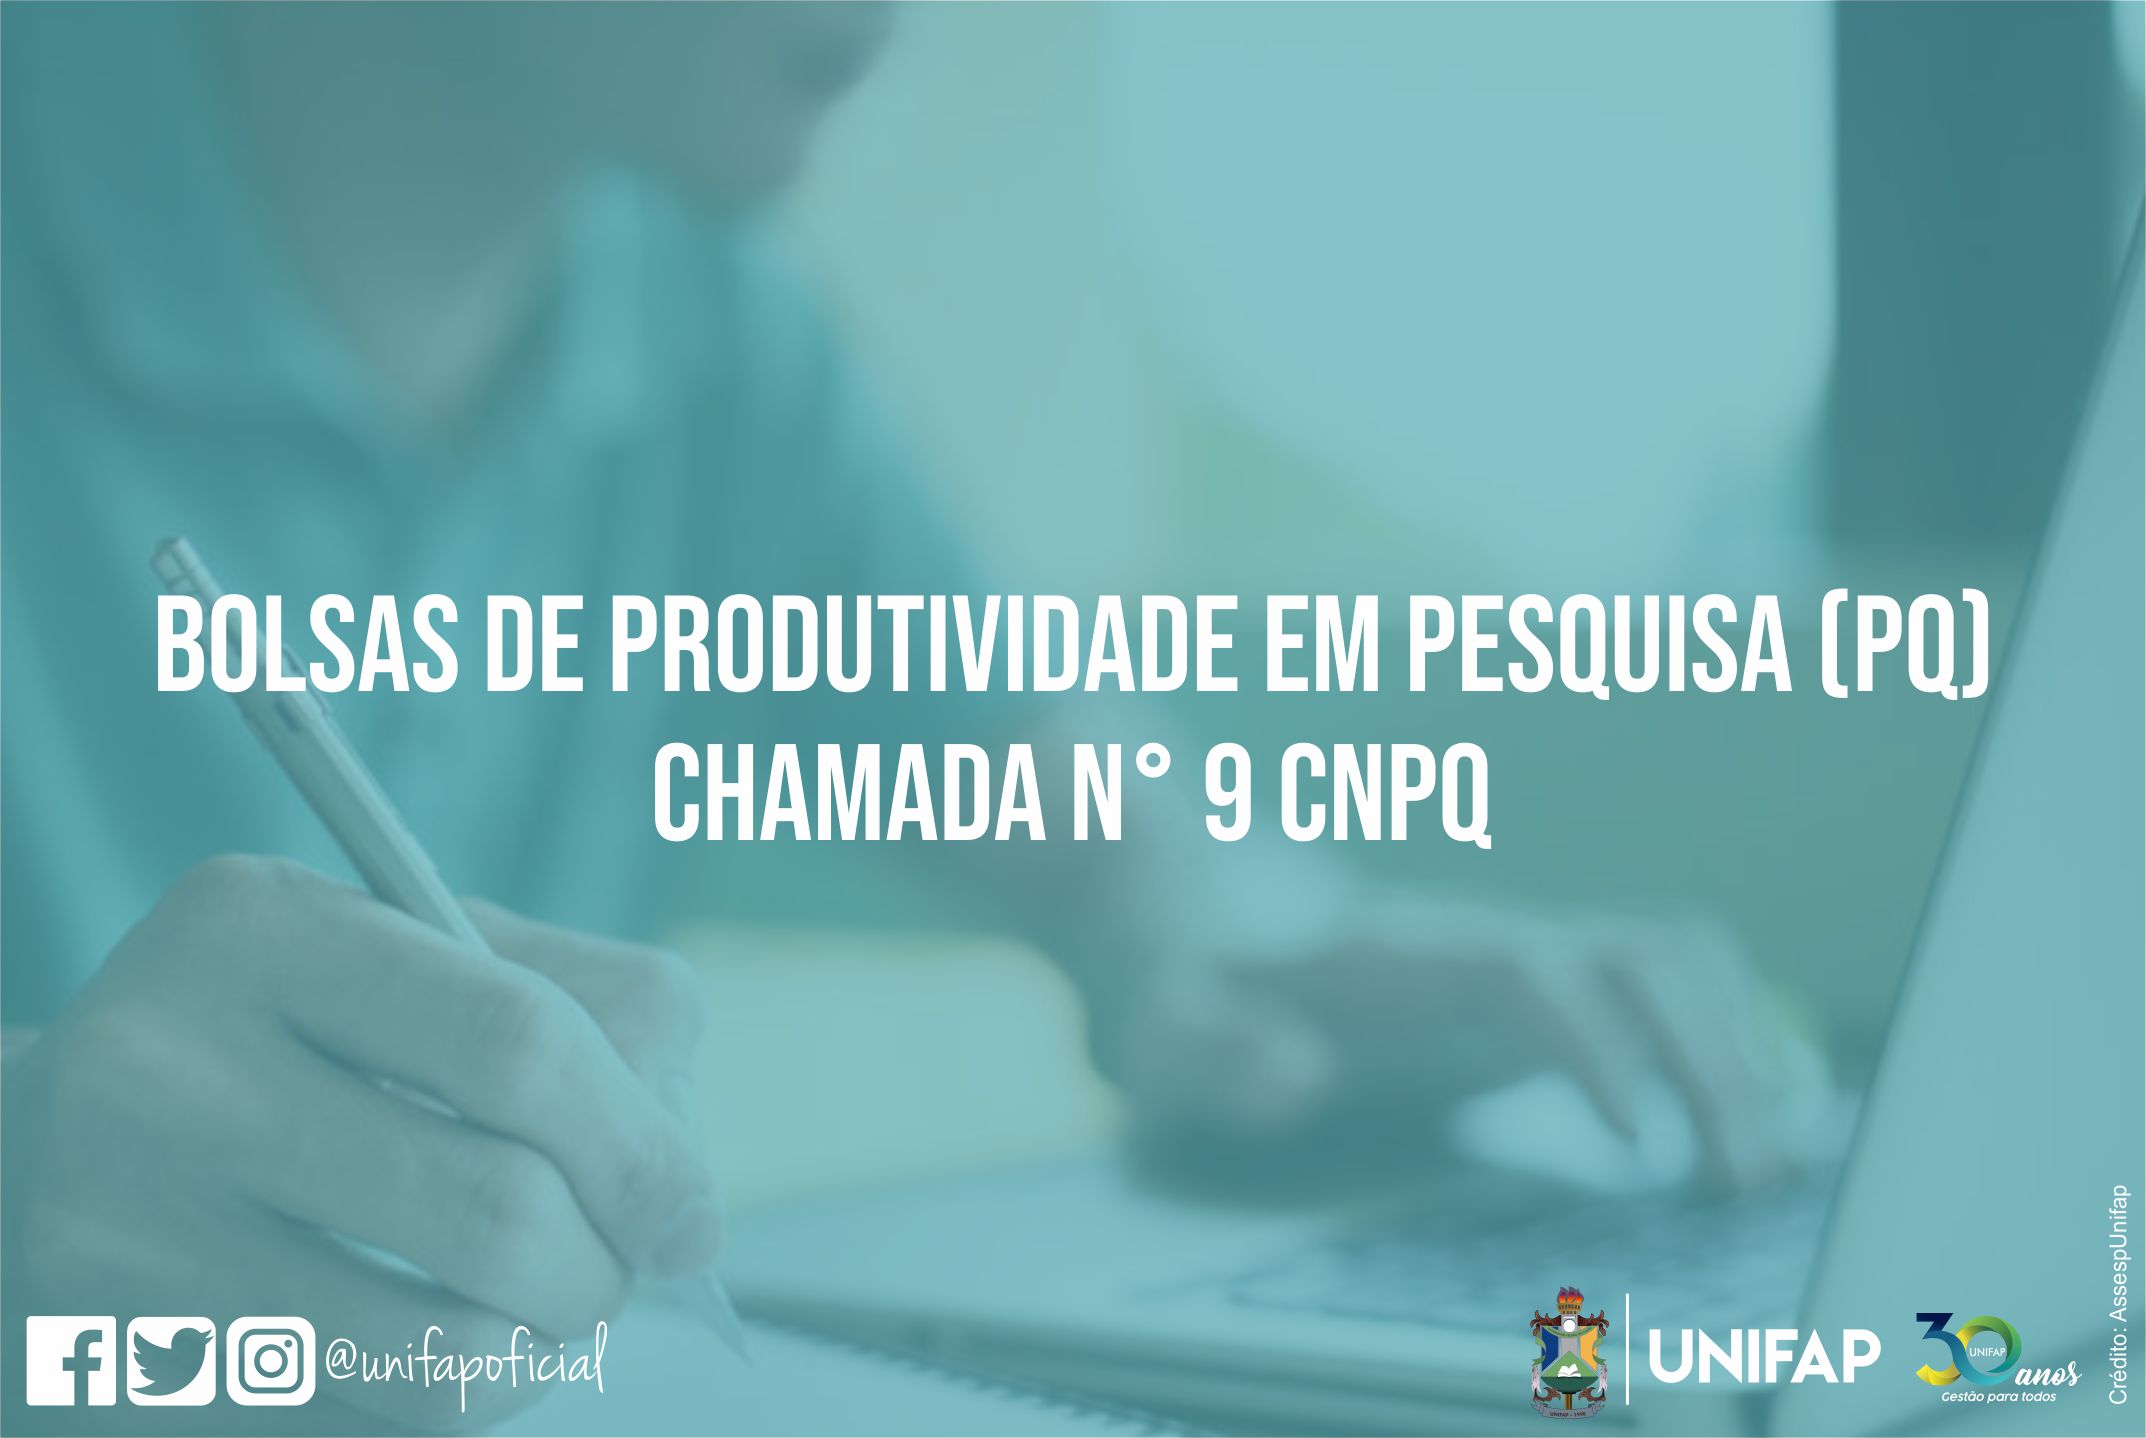 Sometimes command within Docente da Unifap tem projeto aprovado em bolsa de Produtividade em Pesquisa  do CNPq - UNIFAP